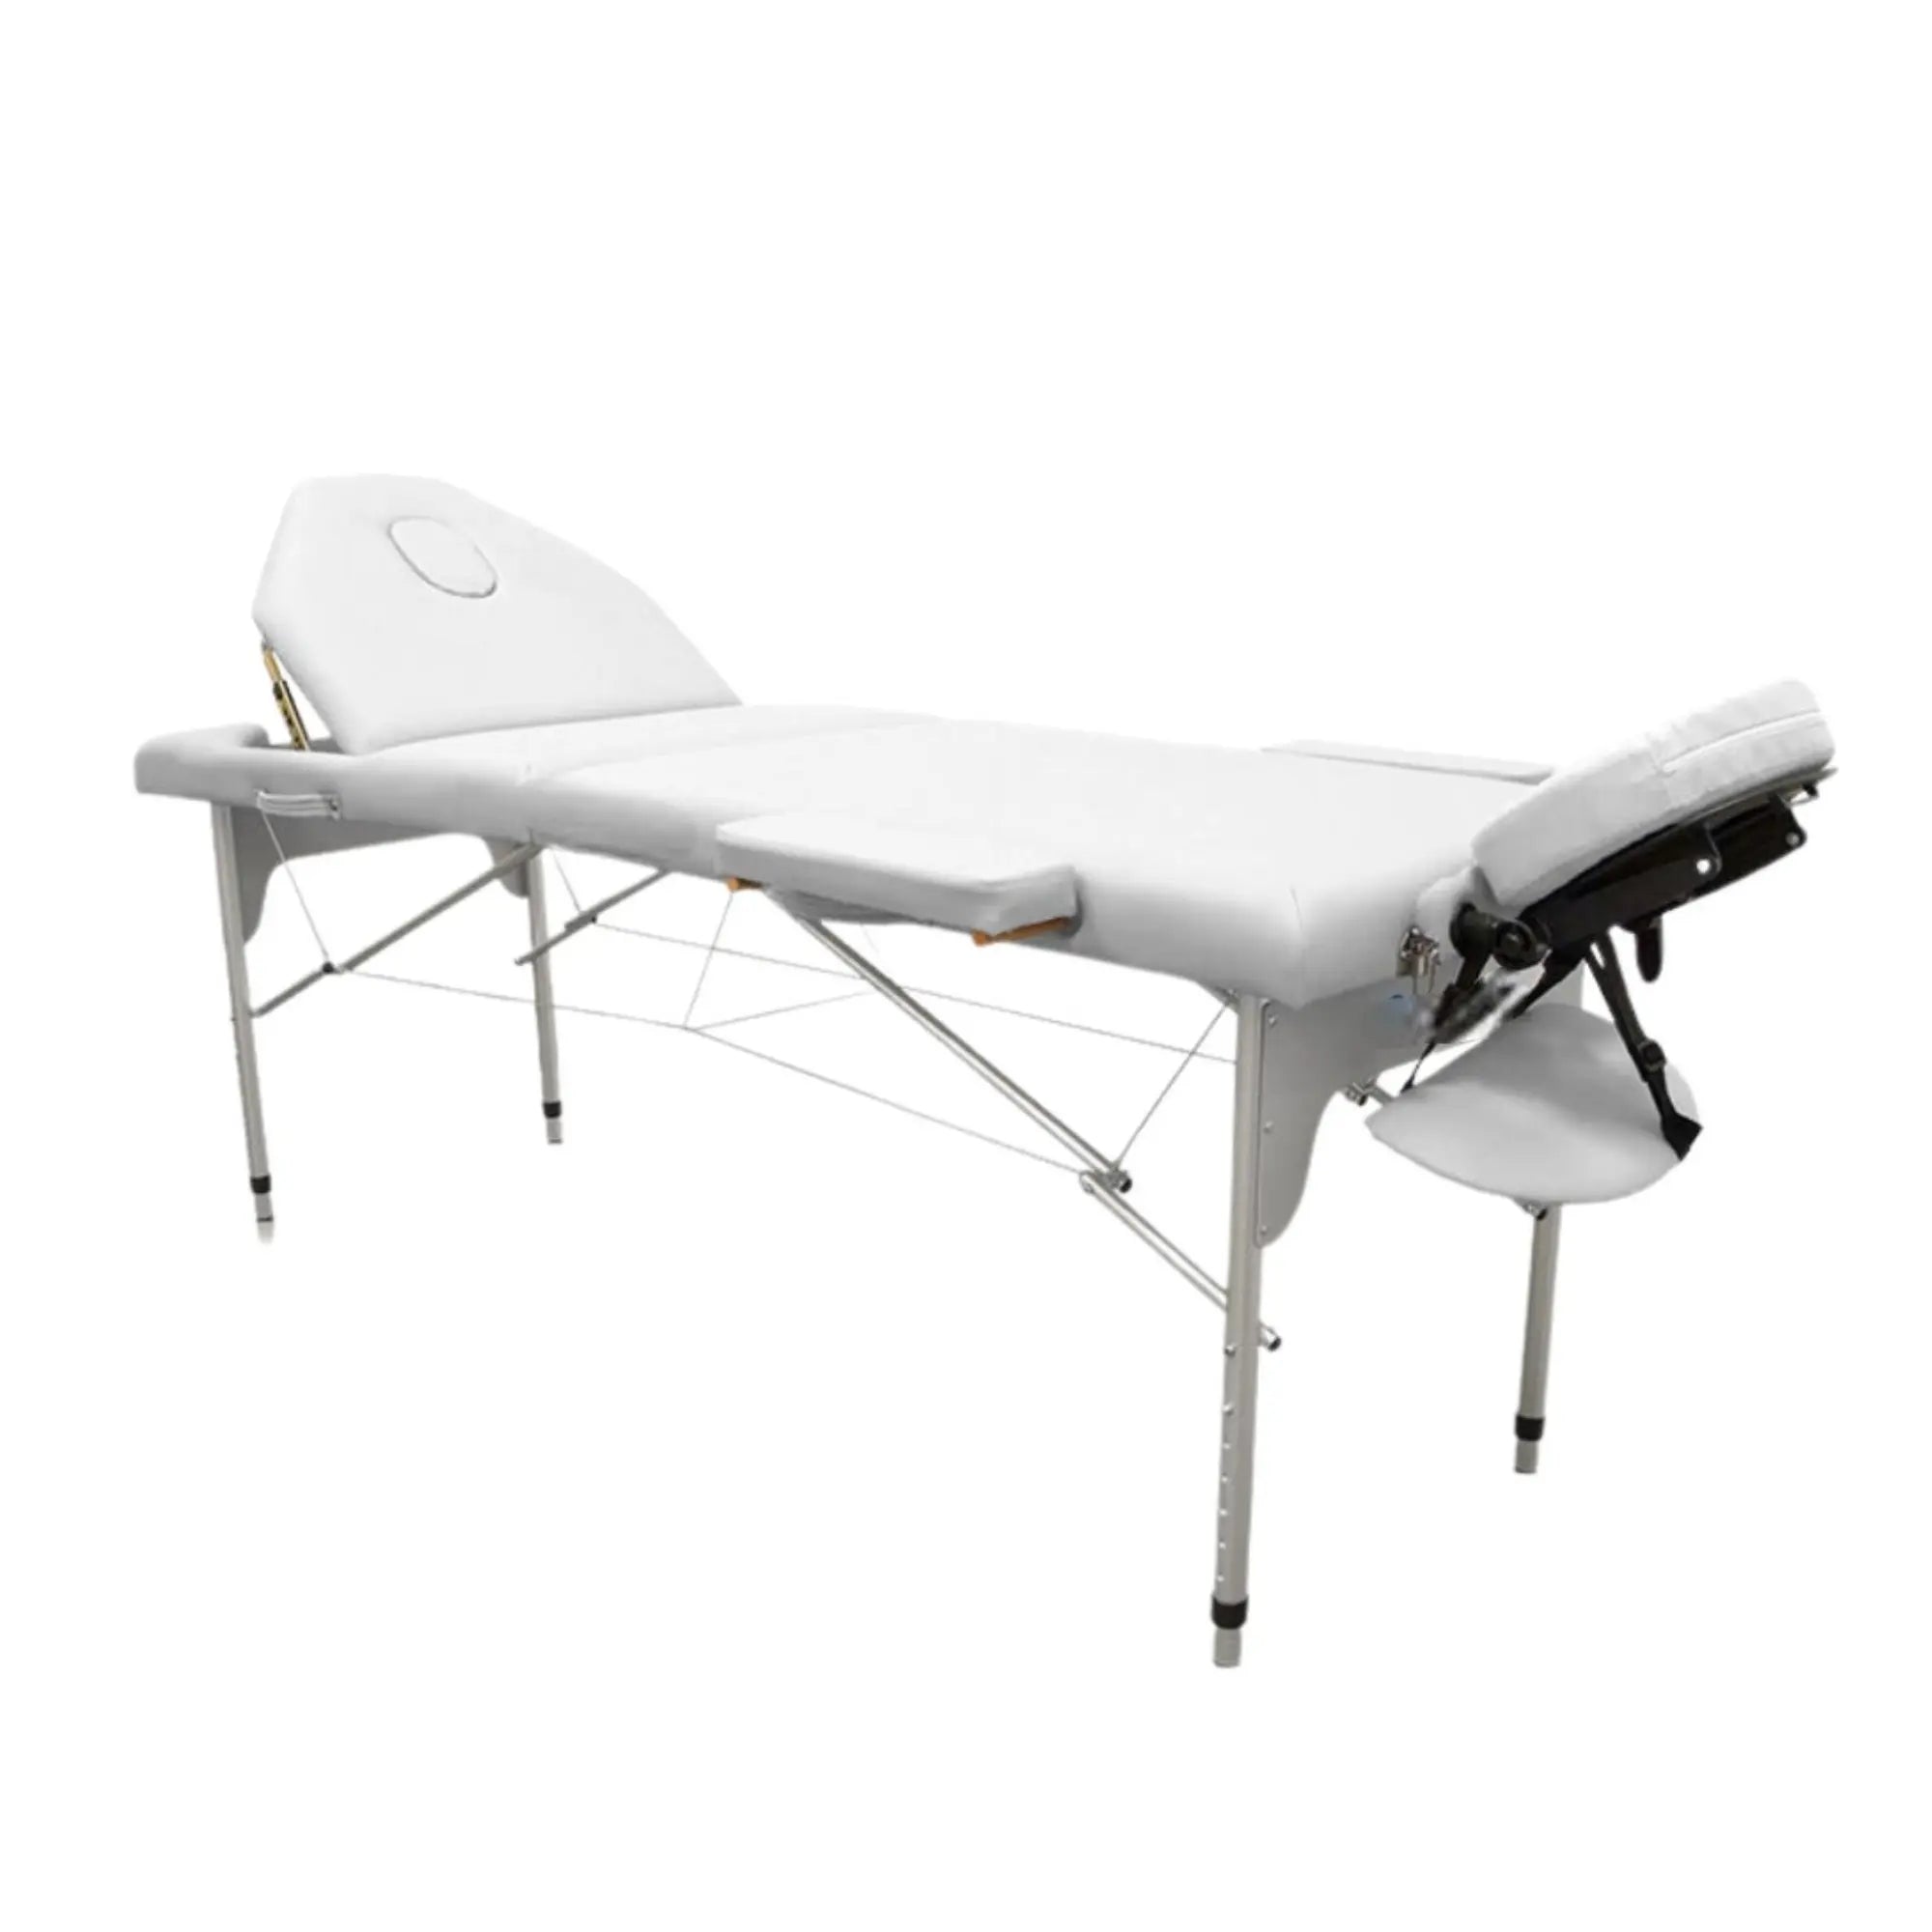 Table de massage pliante en aluminium 186 x 66 cm avec dossier inclinable - 7 coloris My Podologie